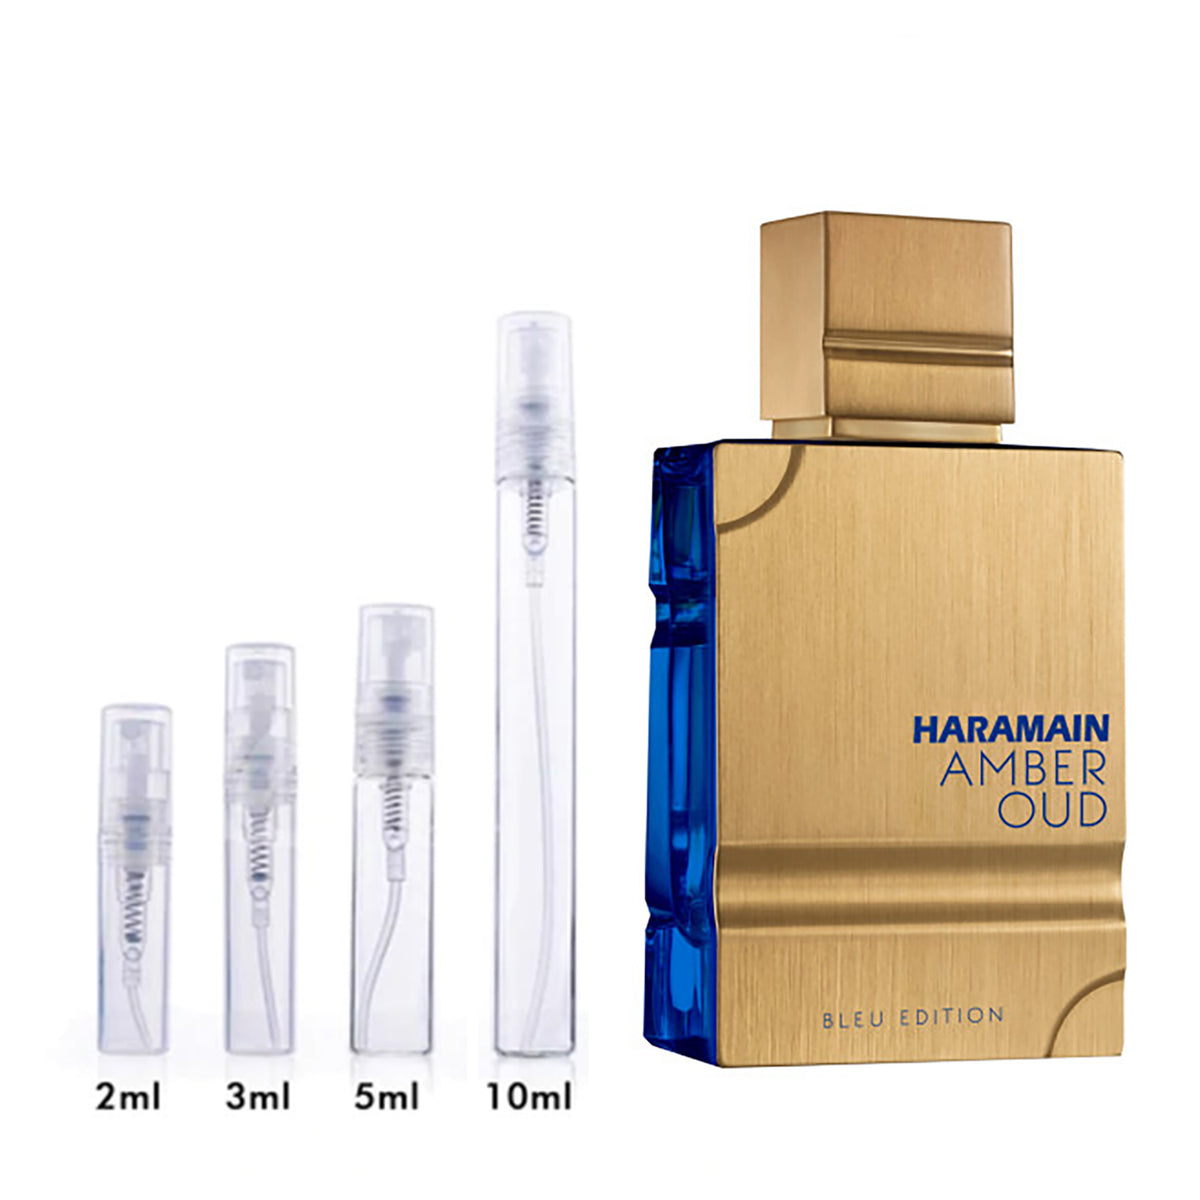 Al Haramain Eau de Parfum for Men Scent